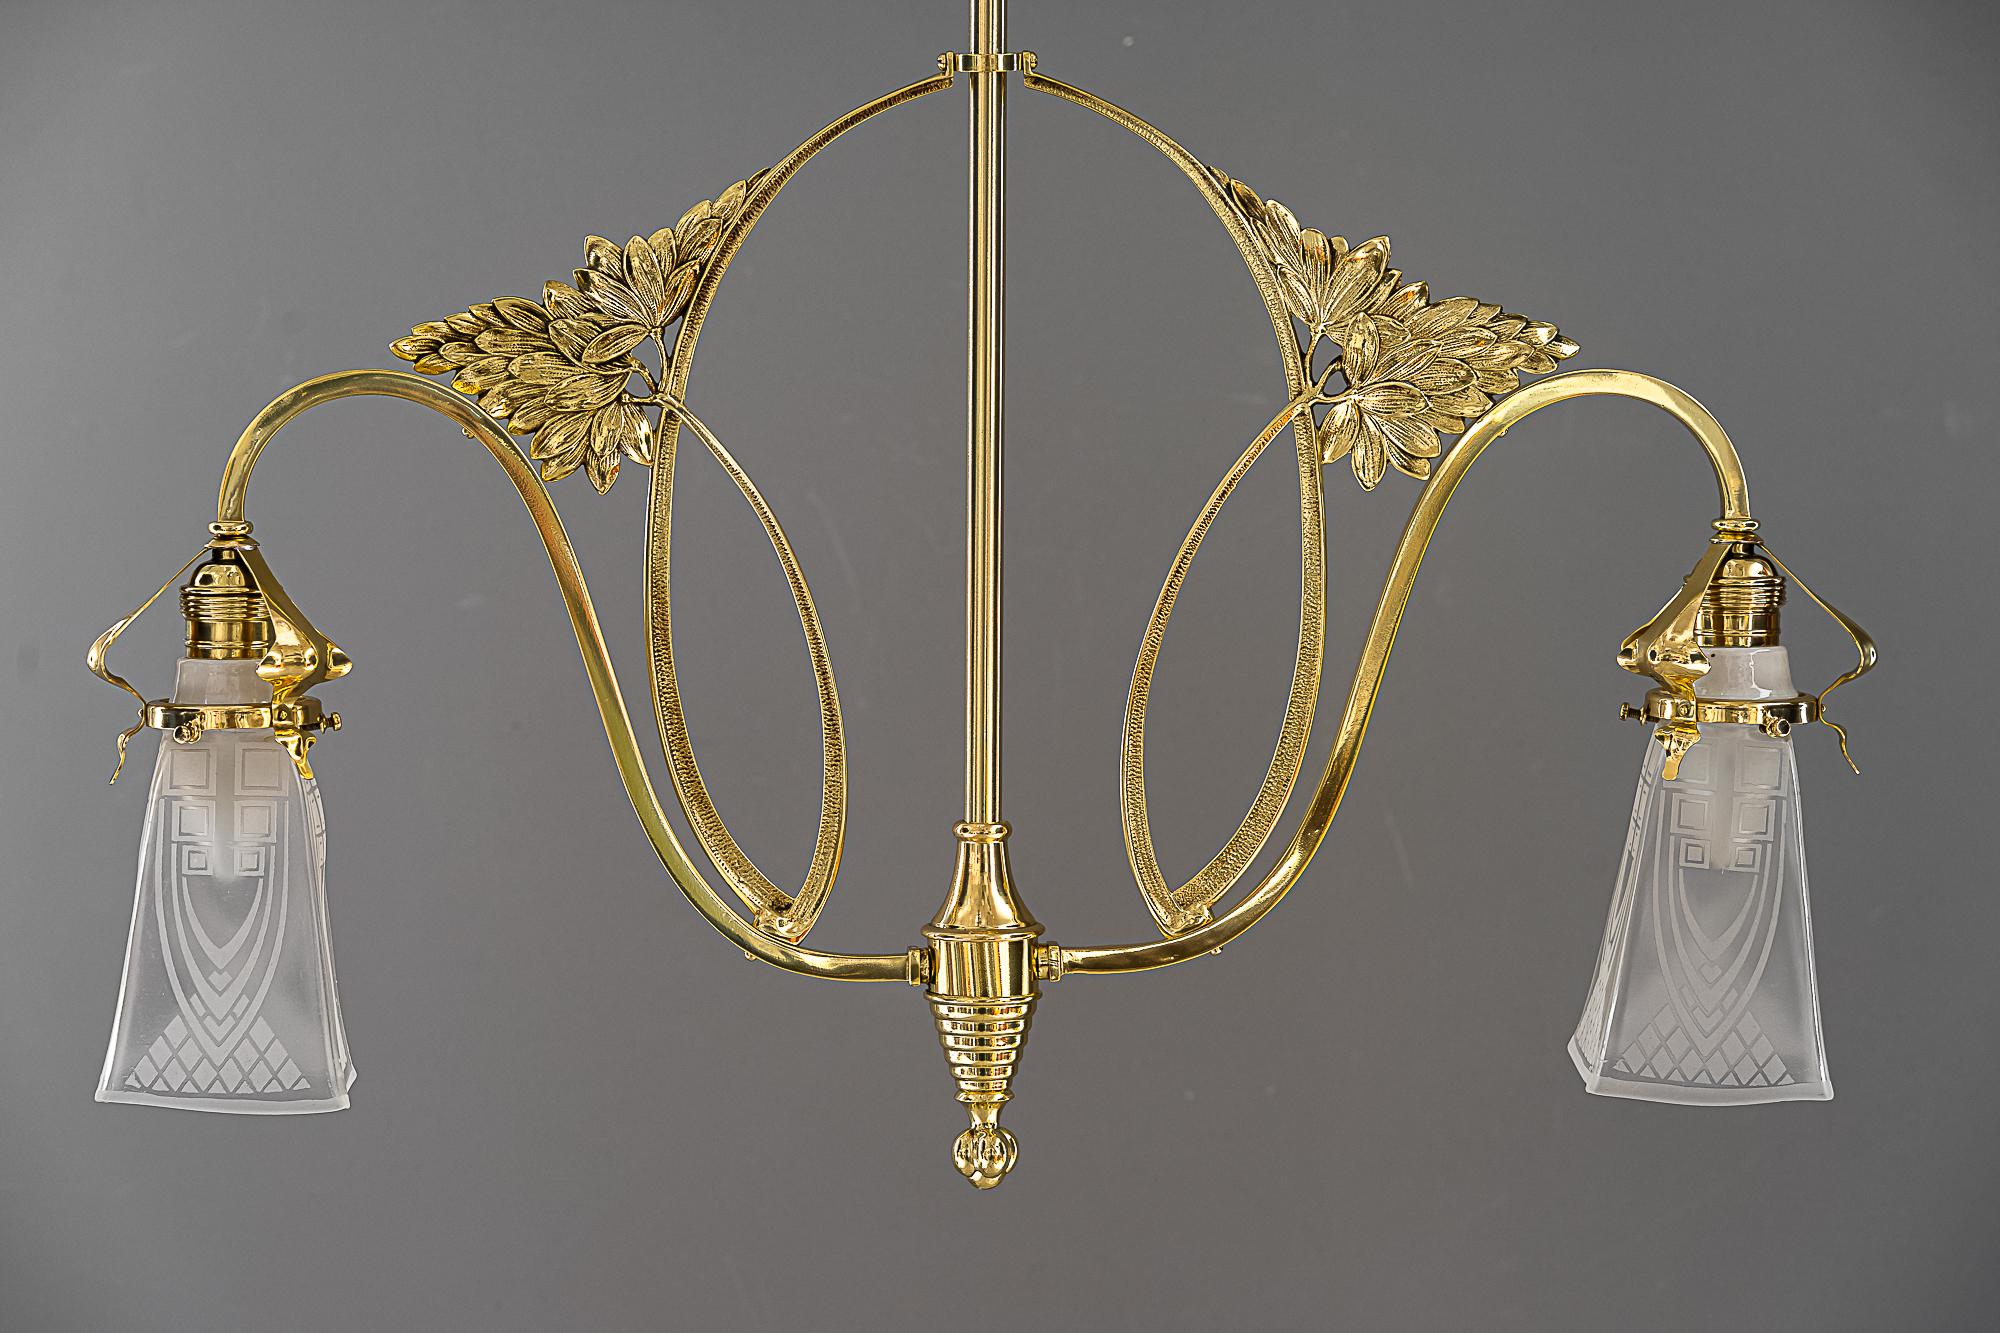 Jugendstil chandelier vienna around 1909
Polished and stove enameled
Original antique glass shades